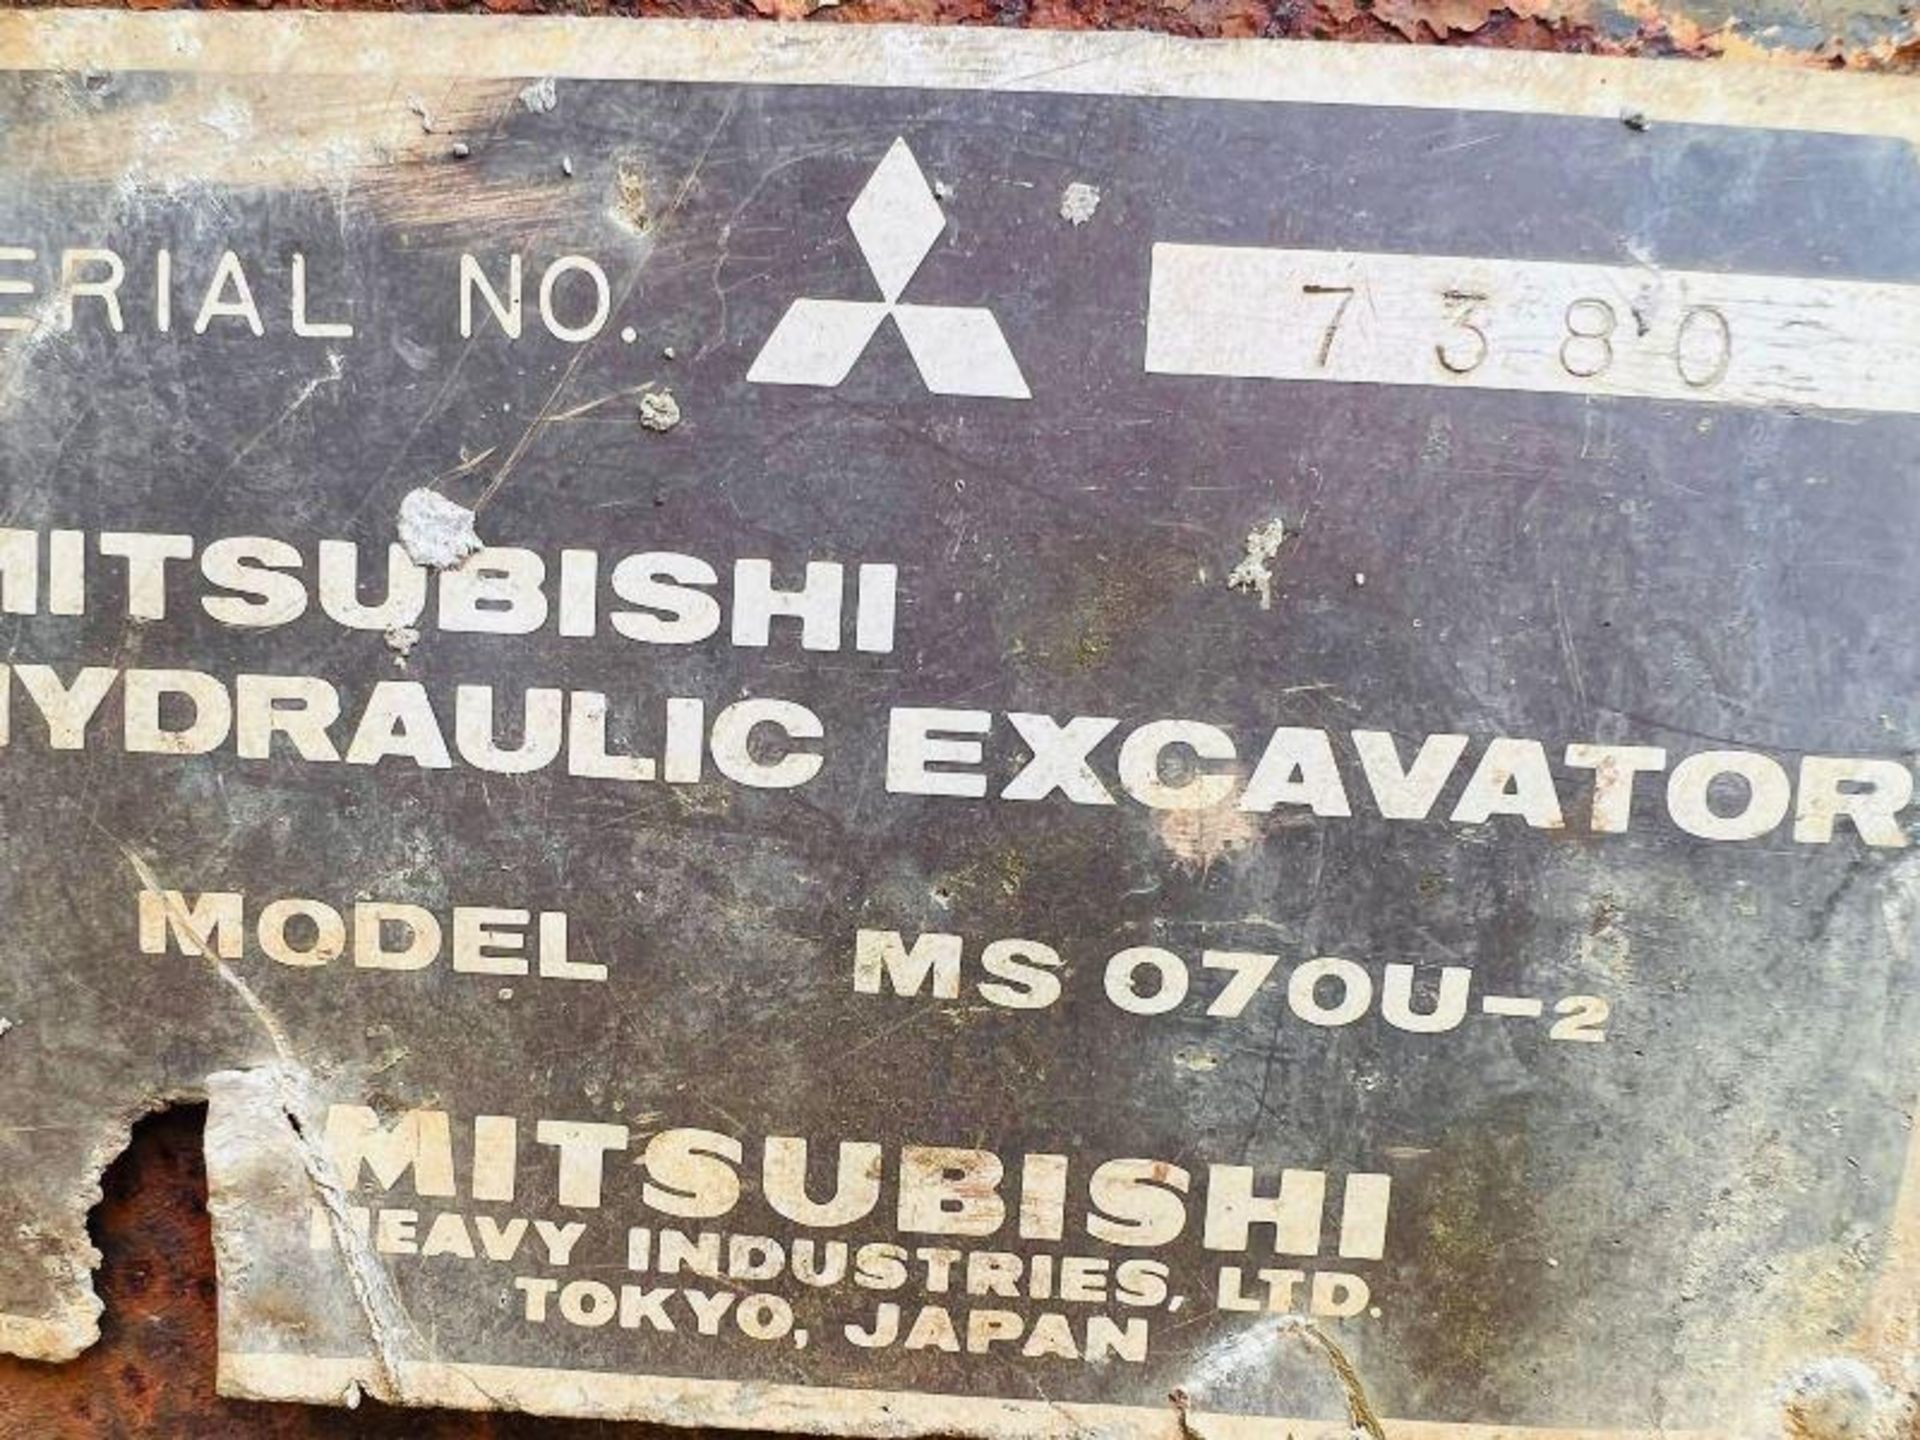 MITSUBISHI MS070U-2 TRACKED EXCAVATOR C/W BUCKET - Image 12 of 13